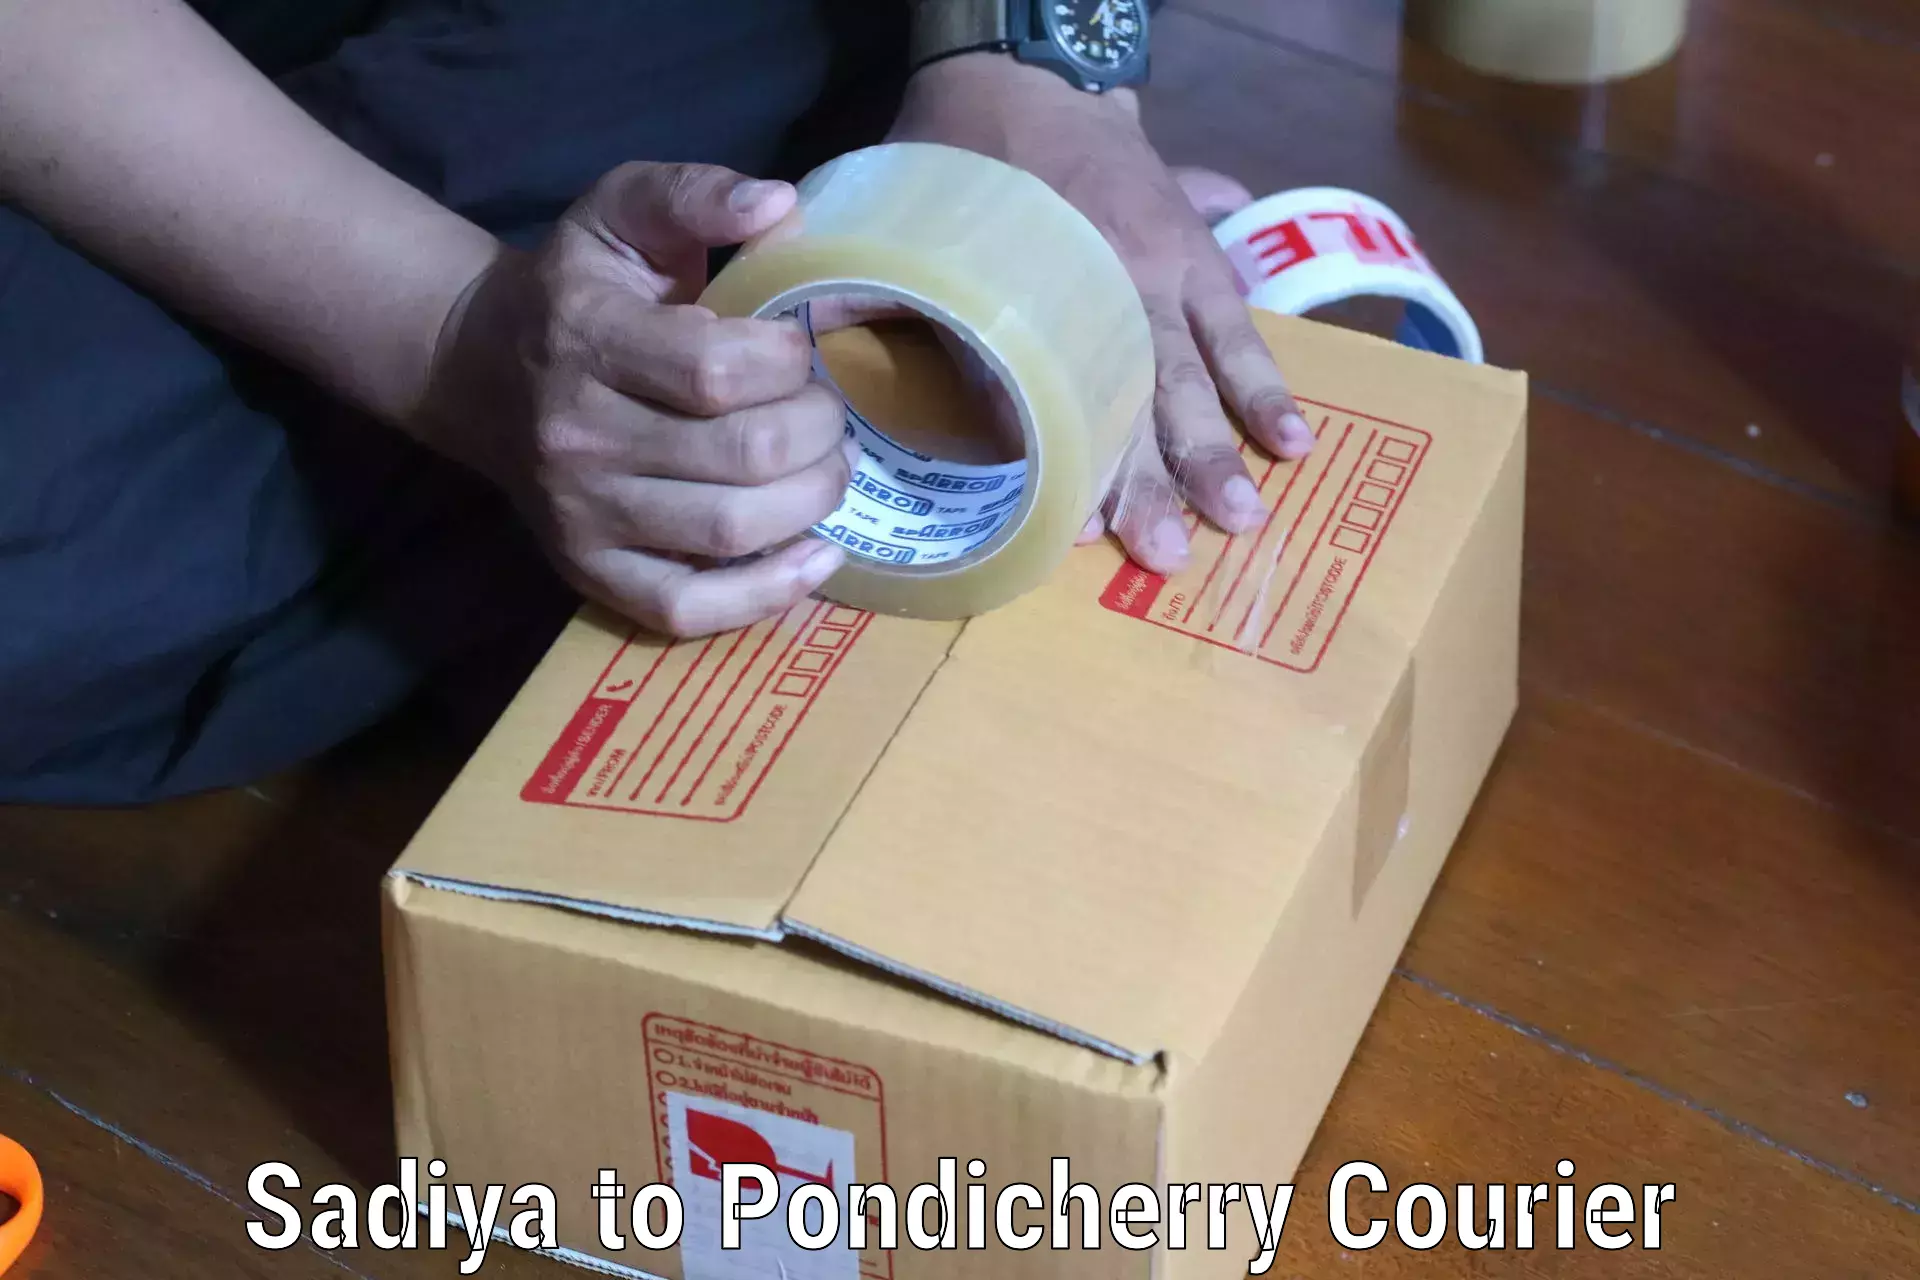 User-friendly delivery service Sadiya to Pondicherry